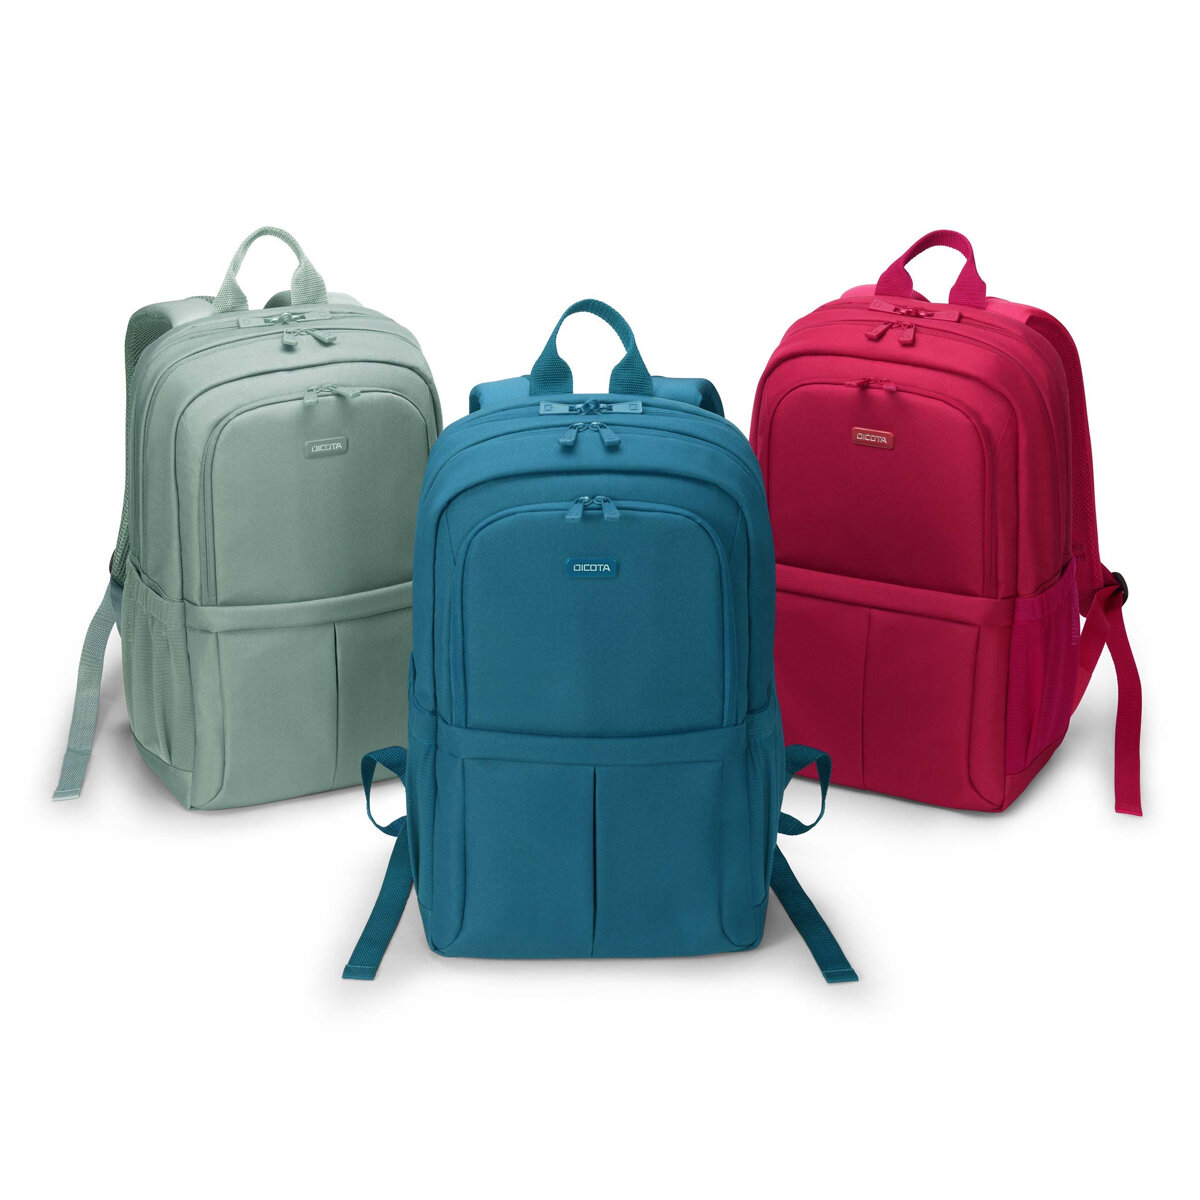 Plecak na laptopa Dicota Eco Scale 13-15,6 niebieski od frontu trzy różne kolory na białym tle